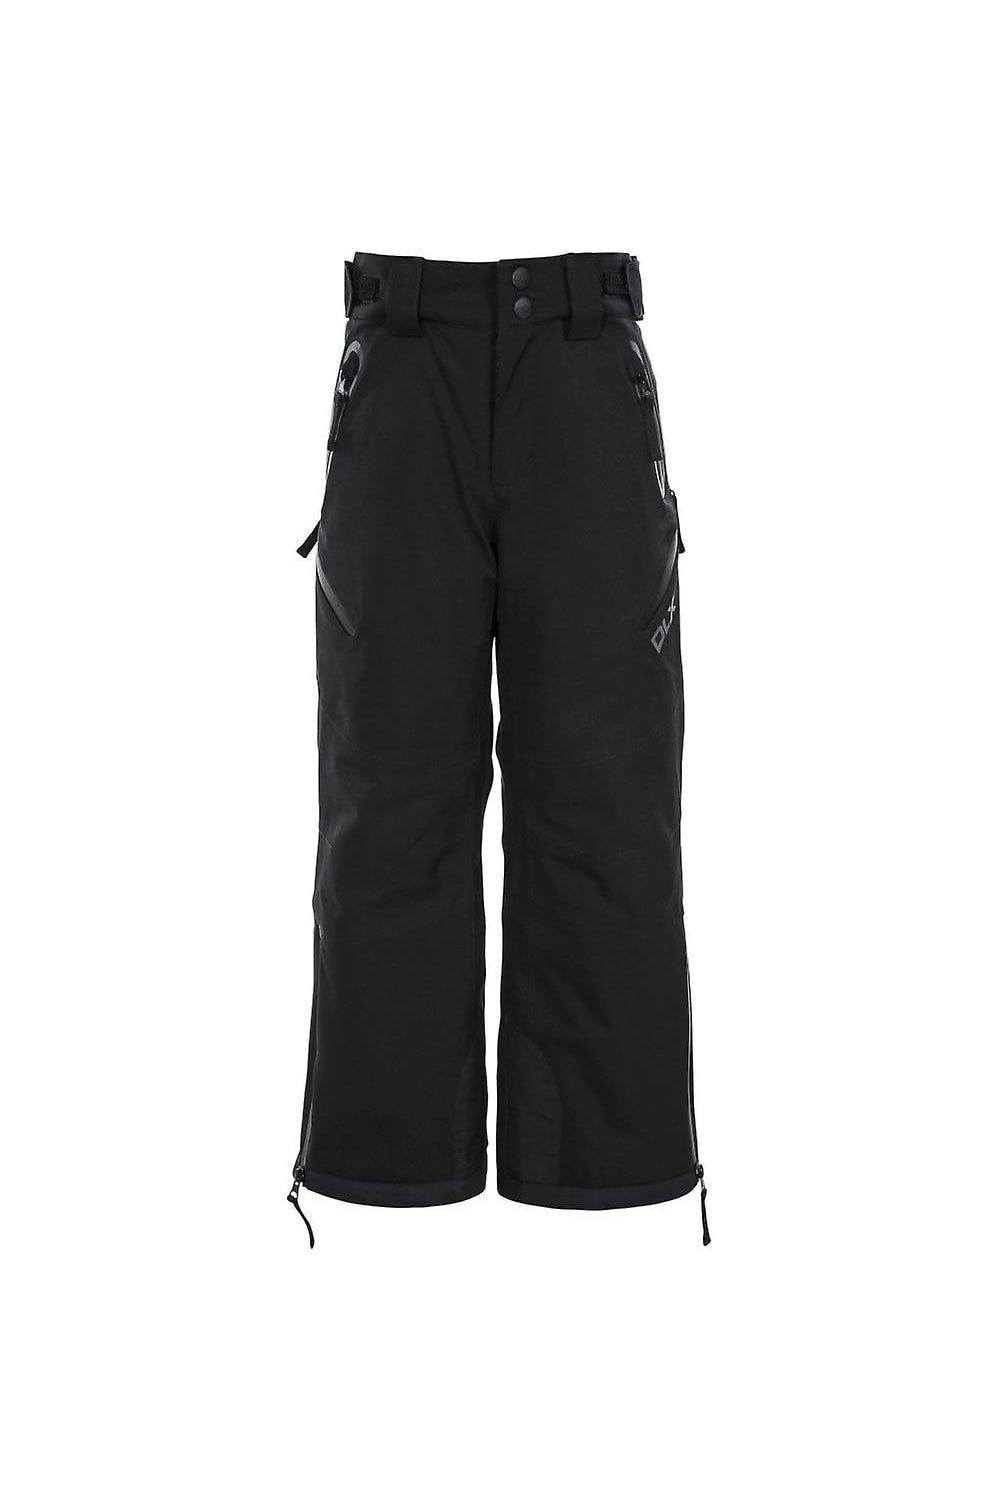 Лыжные брюки Dozer DLX Trespass, черный